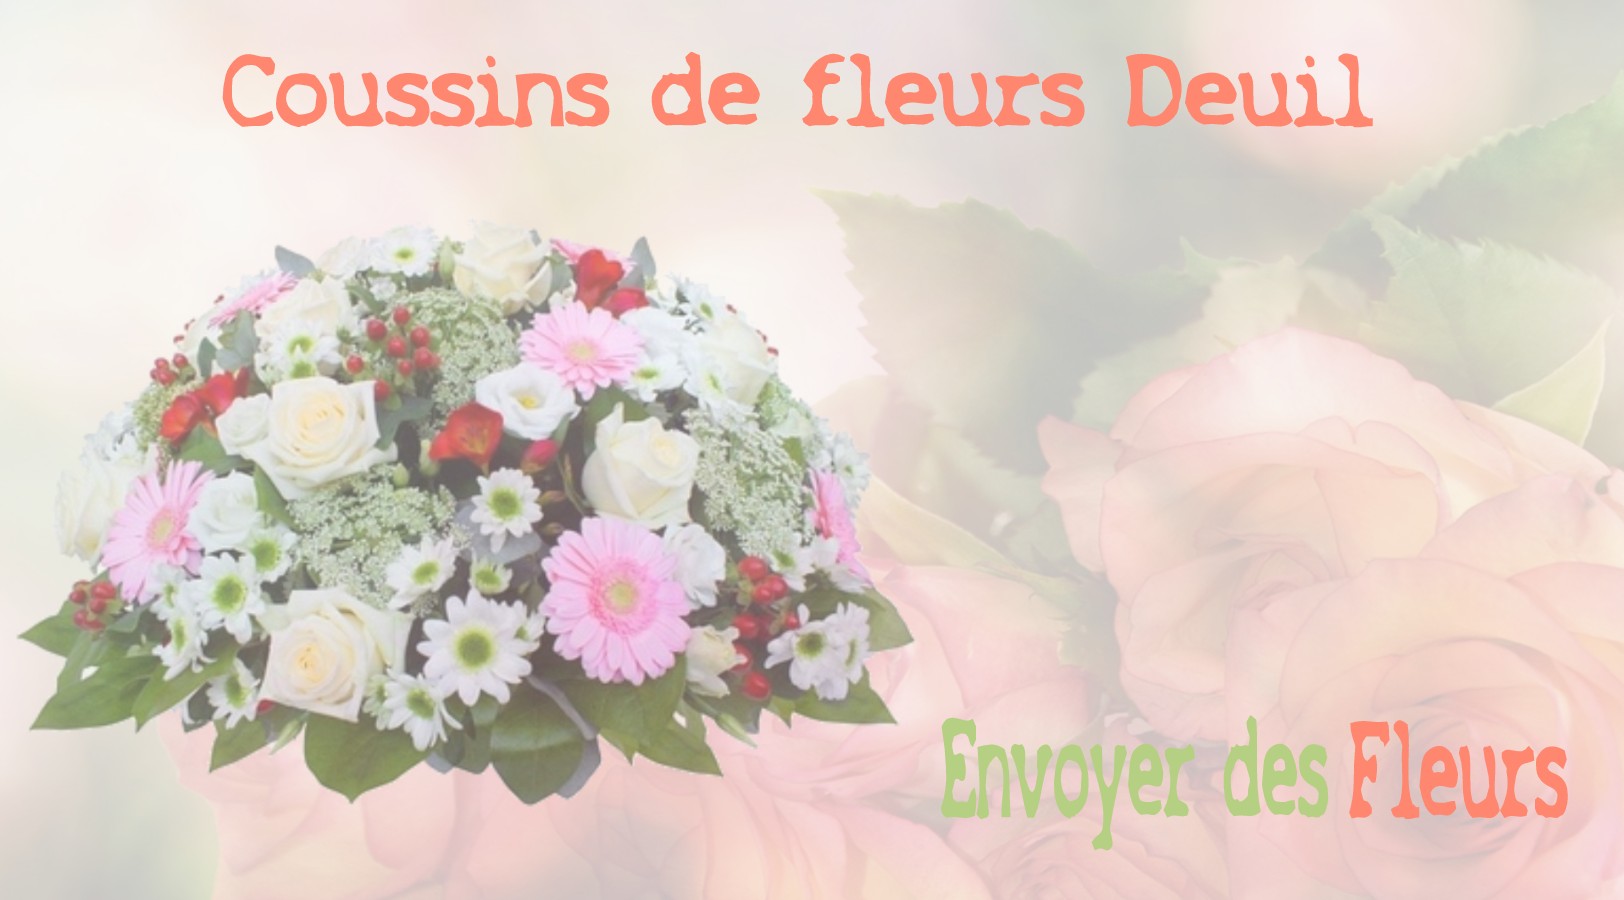 Les coussins de fleurs deuil - LIVRAISON FLEURS DEUIL A LIMETZ-VILLEZ 78